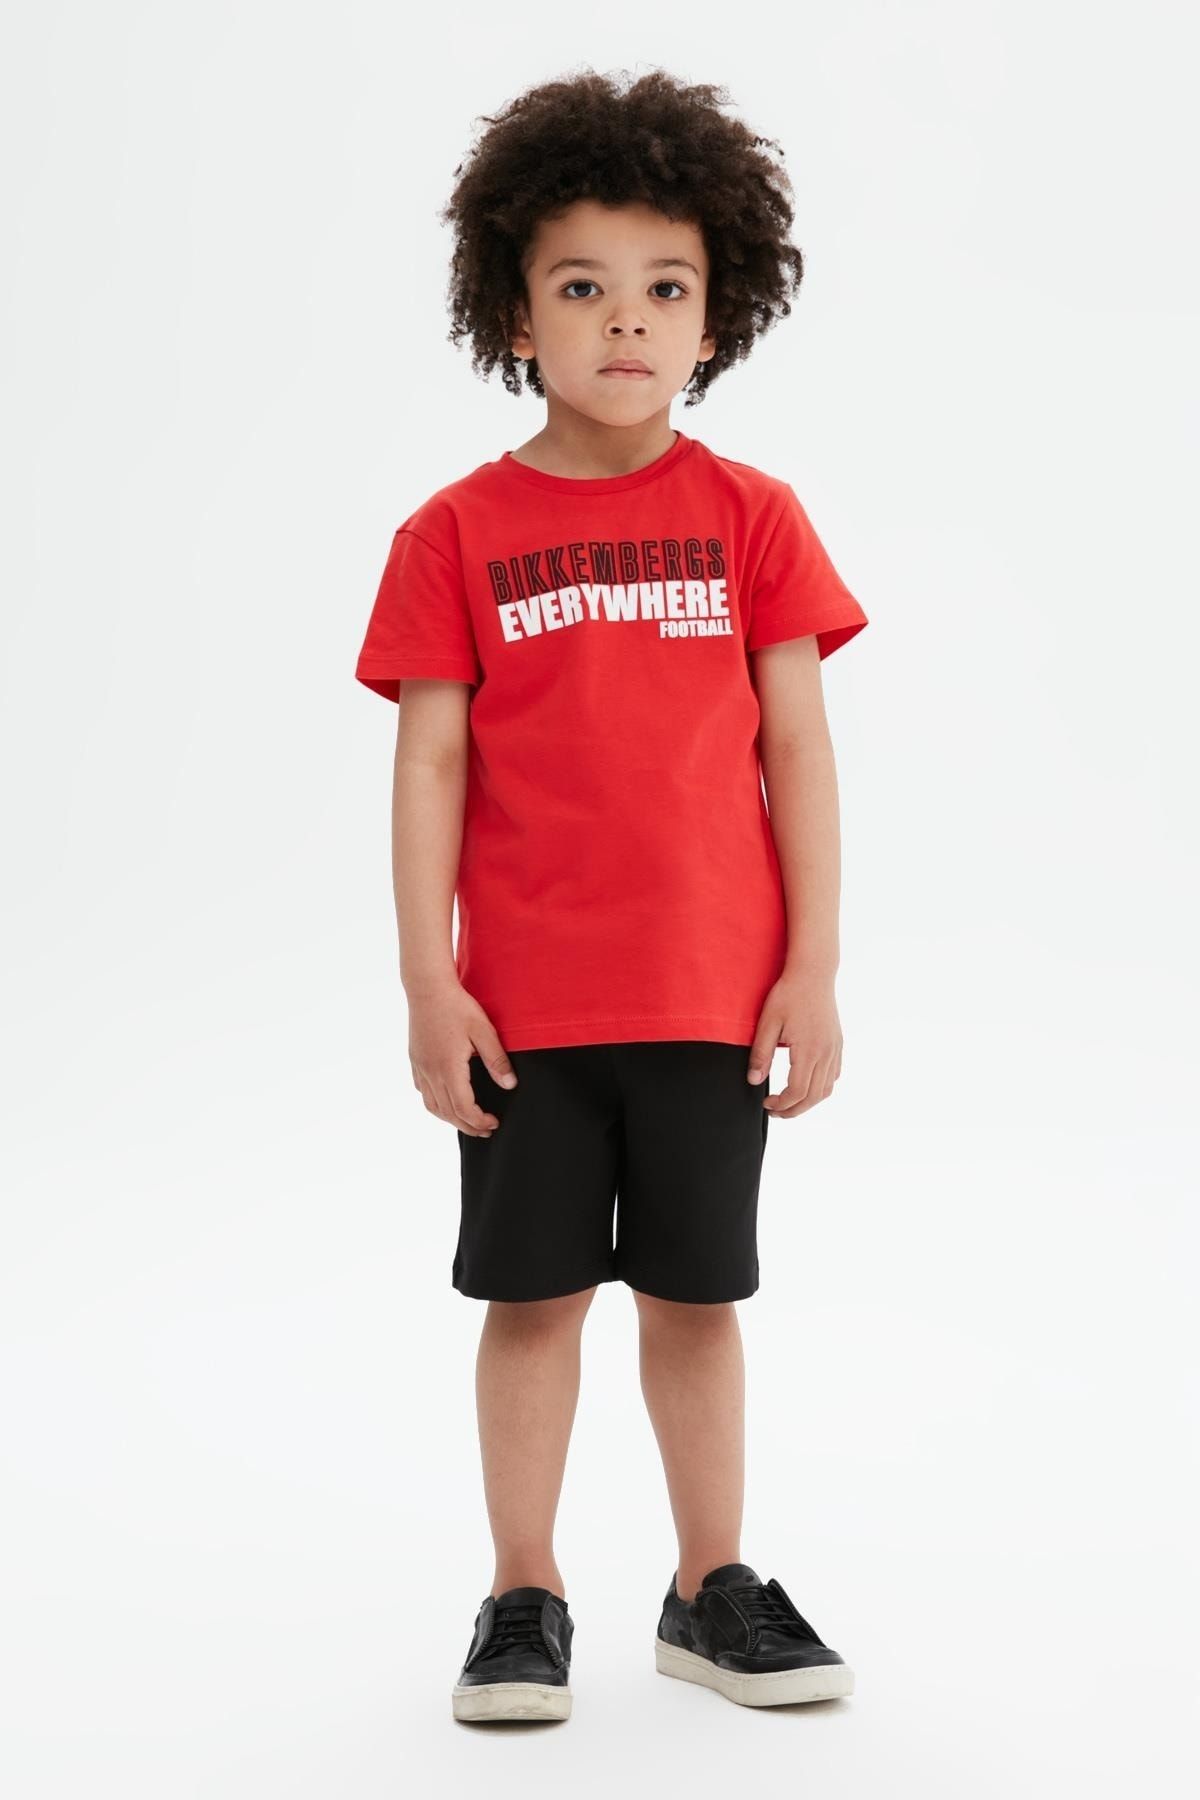 Bikkembergs Erkek Çocuk Kırmızı T-shirt 23ss0bk1569